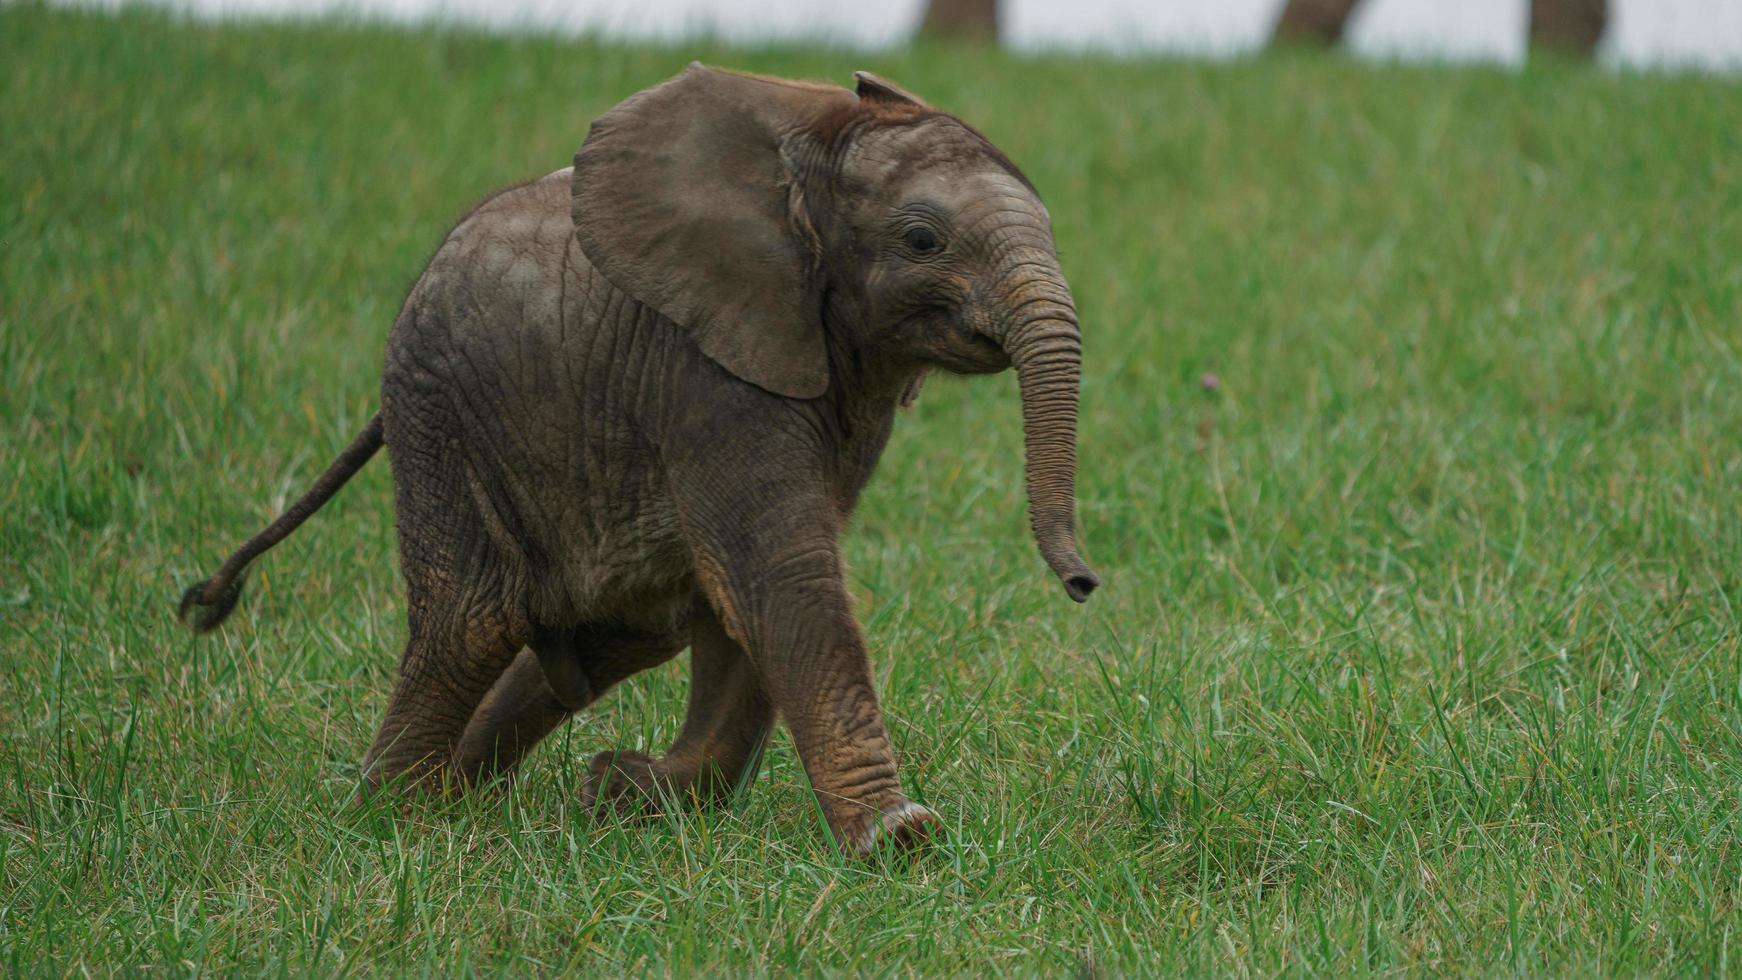 afrikanischer Buschelefant foto